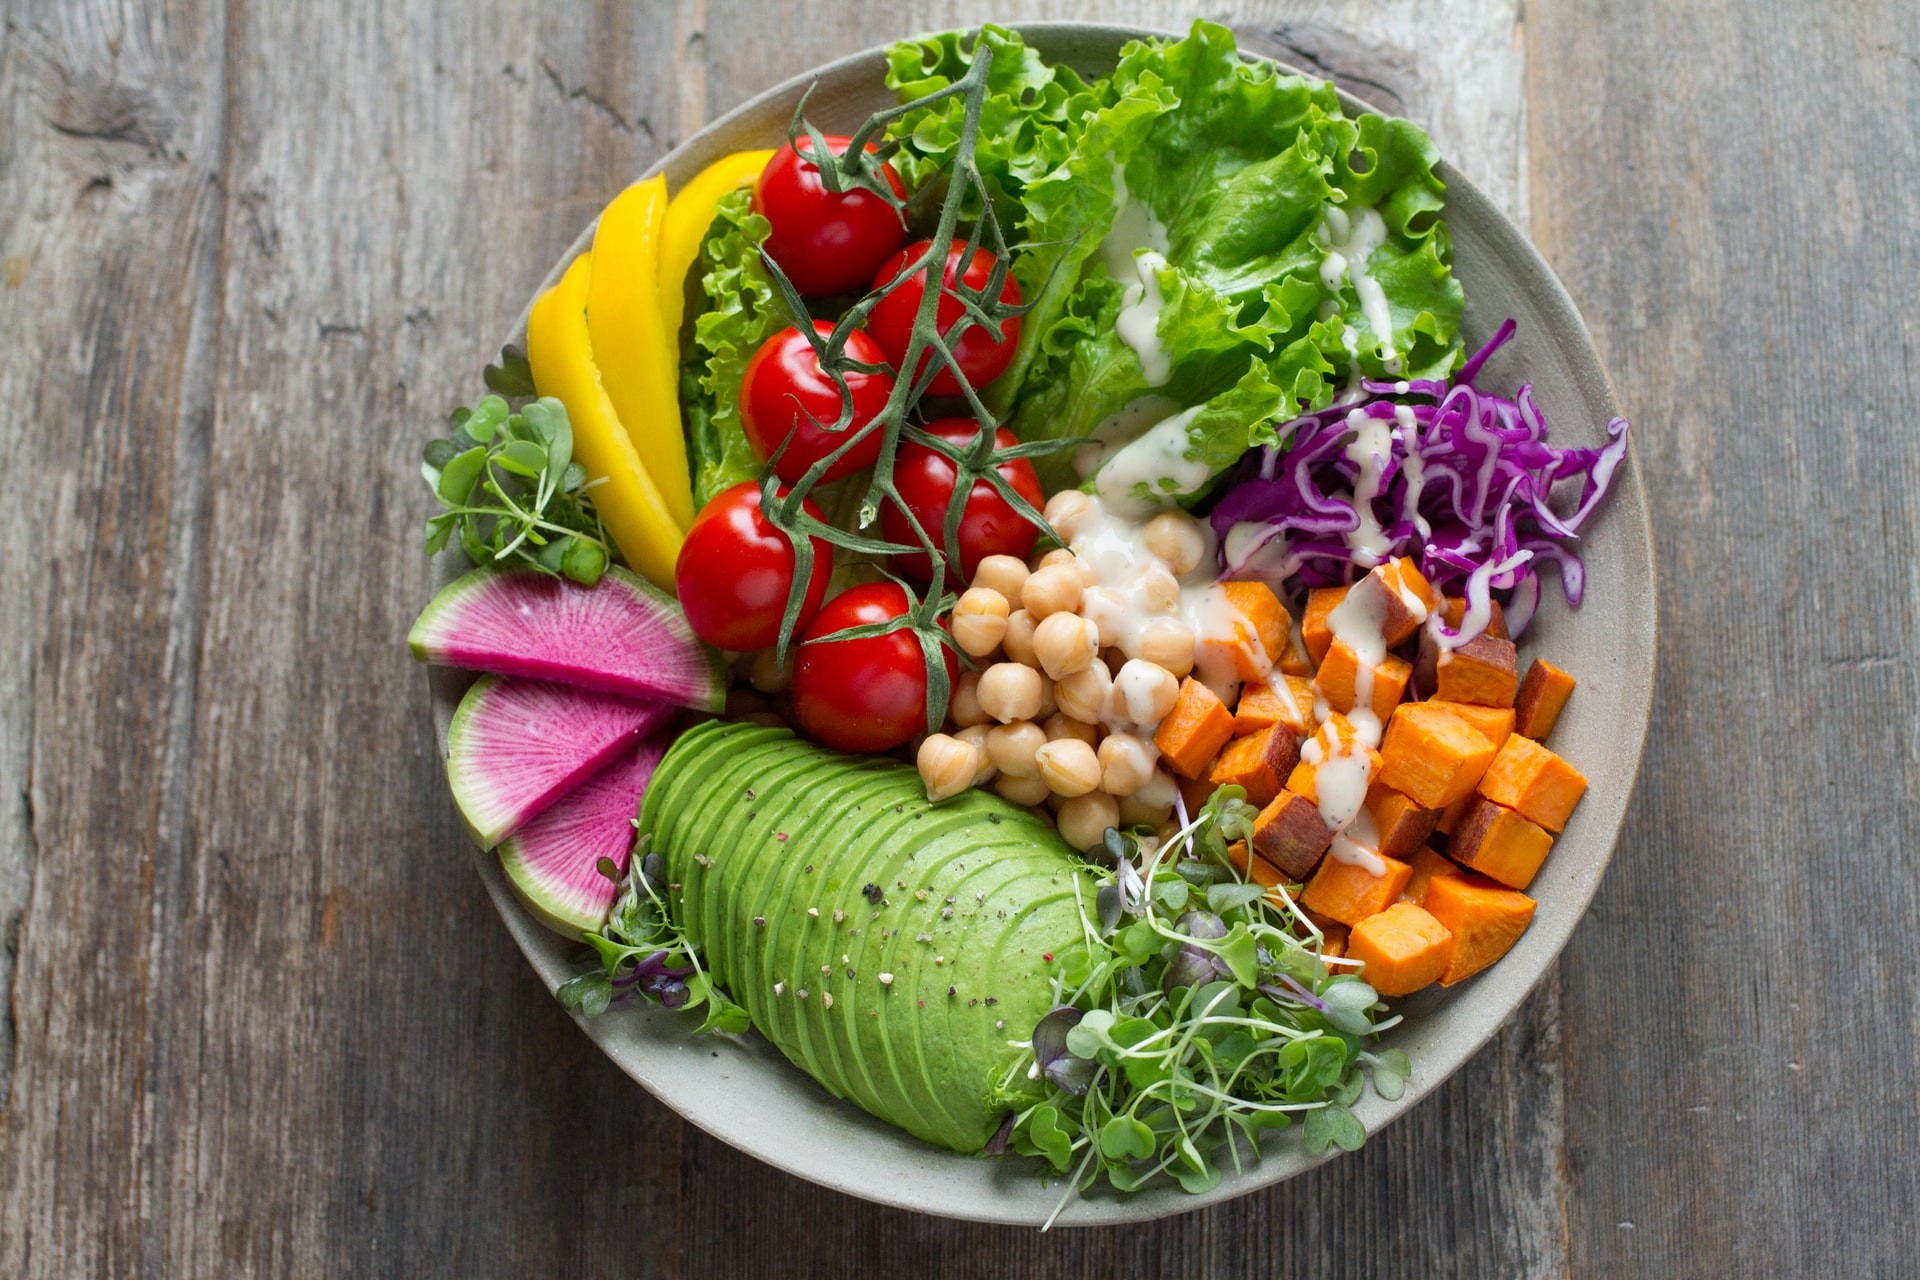 Pessoas com dieta vegetariana têm um perfil de biomarcador mais saudável do que aquelas que são carnívoras, segundo pesquisa (Foto: Anna Pelzer/Unsplash)